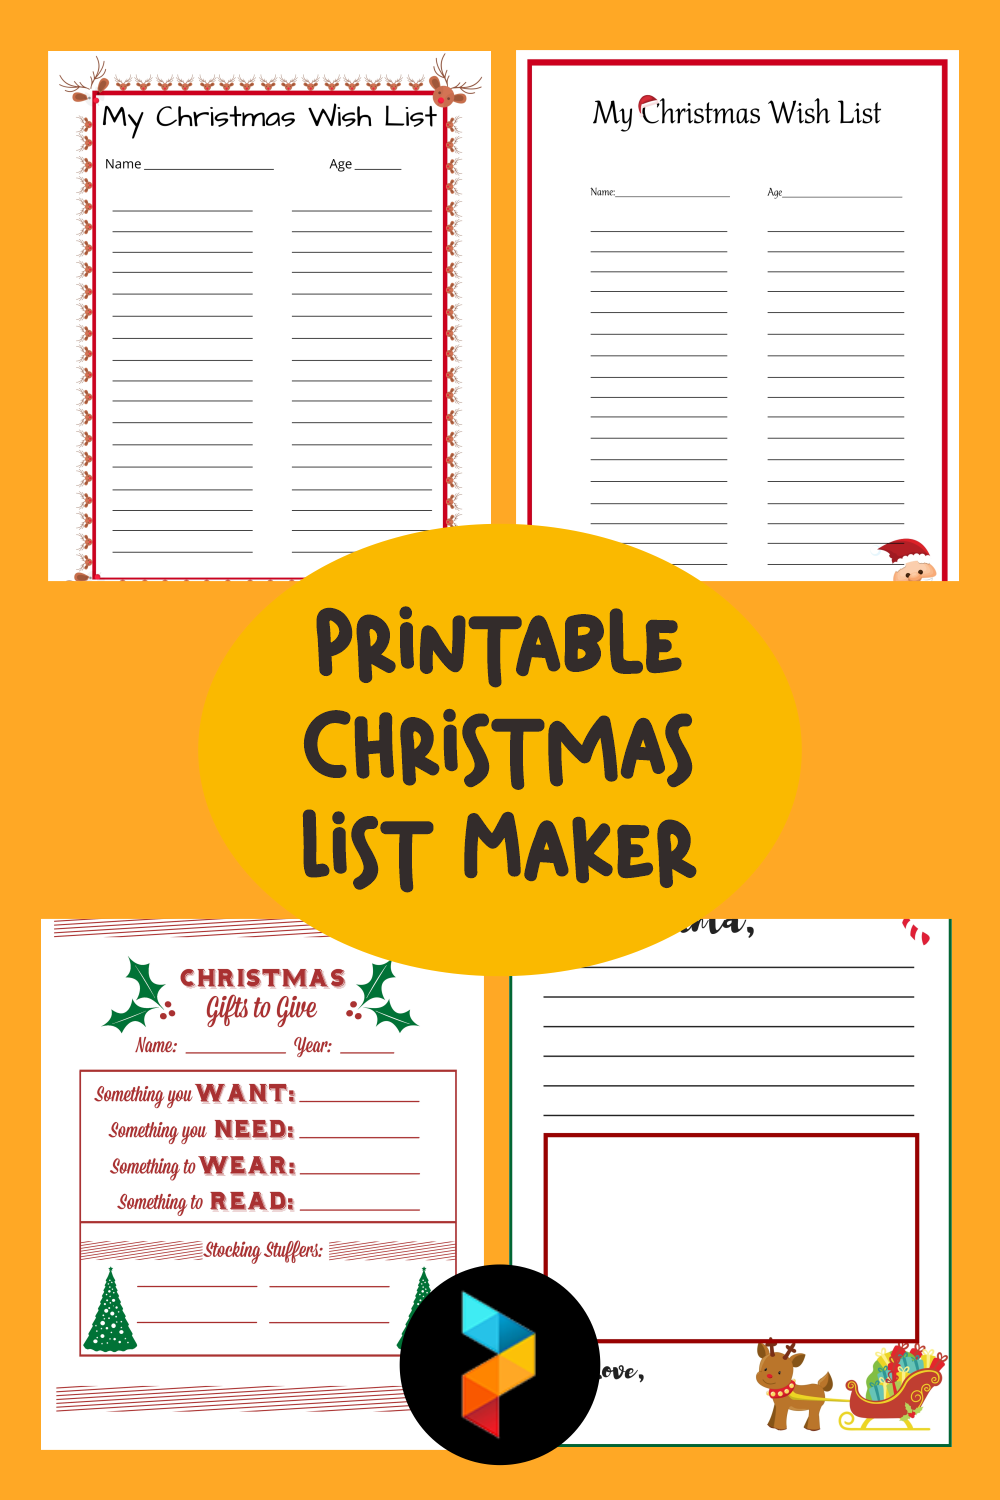 Printable Christmas List Maker